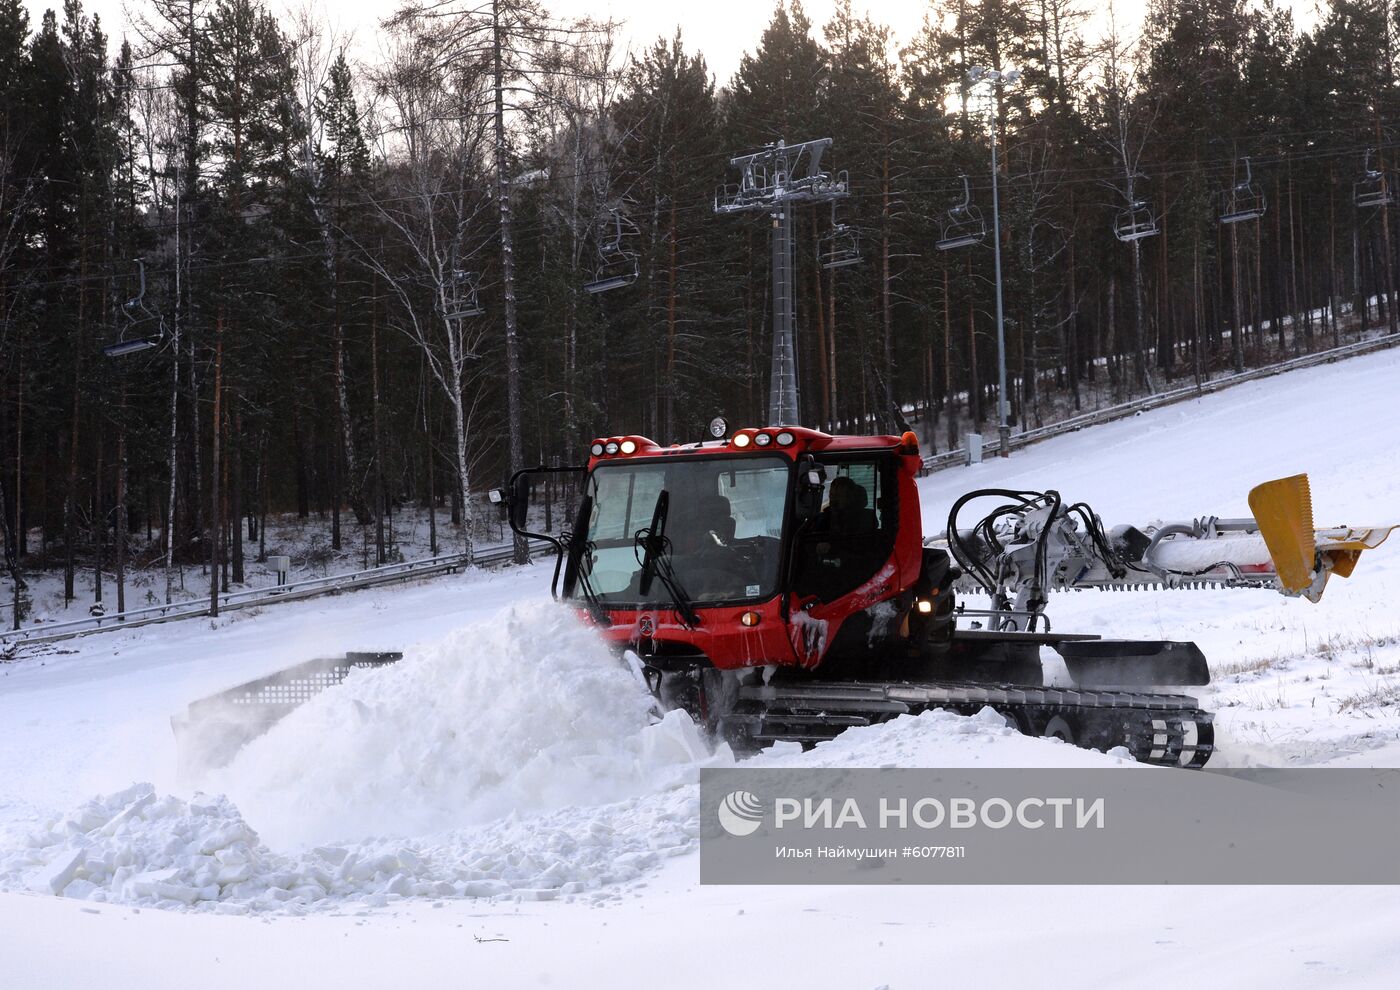 Подготовка к горнолыжному сезону  в Красноярском крае